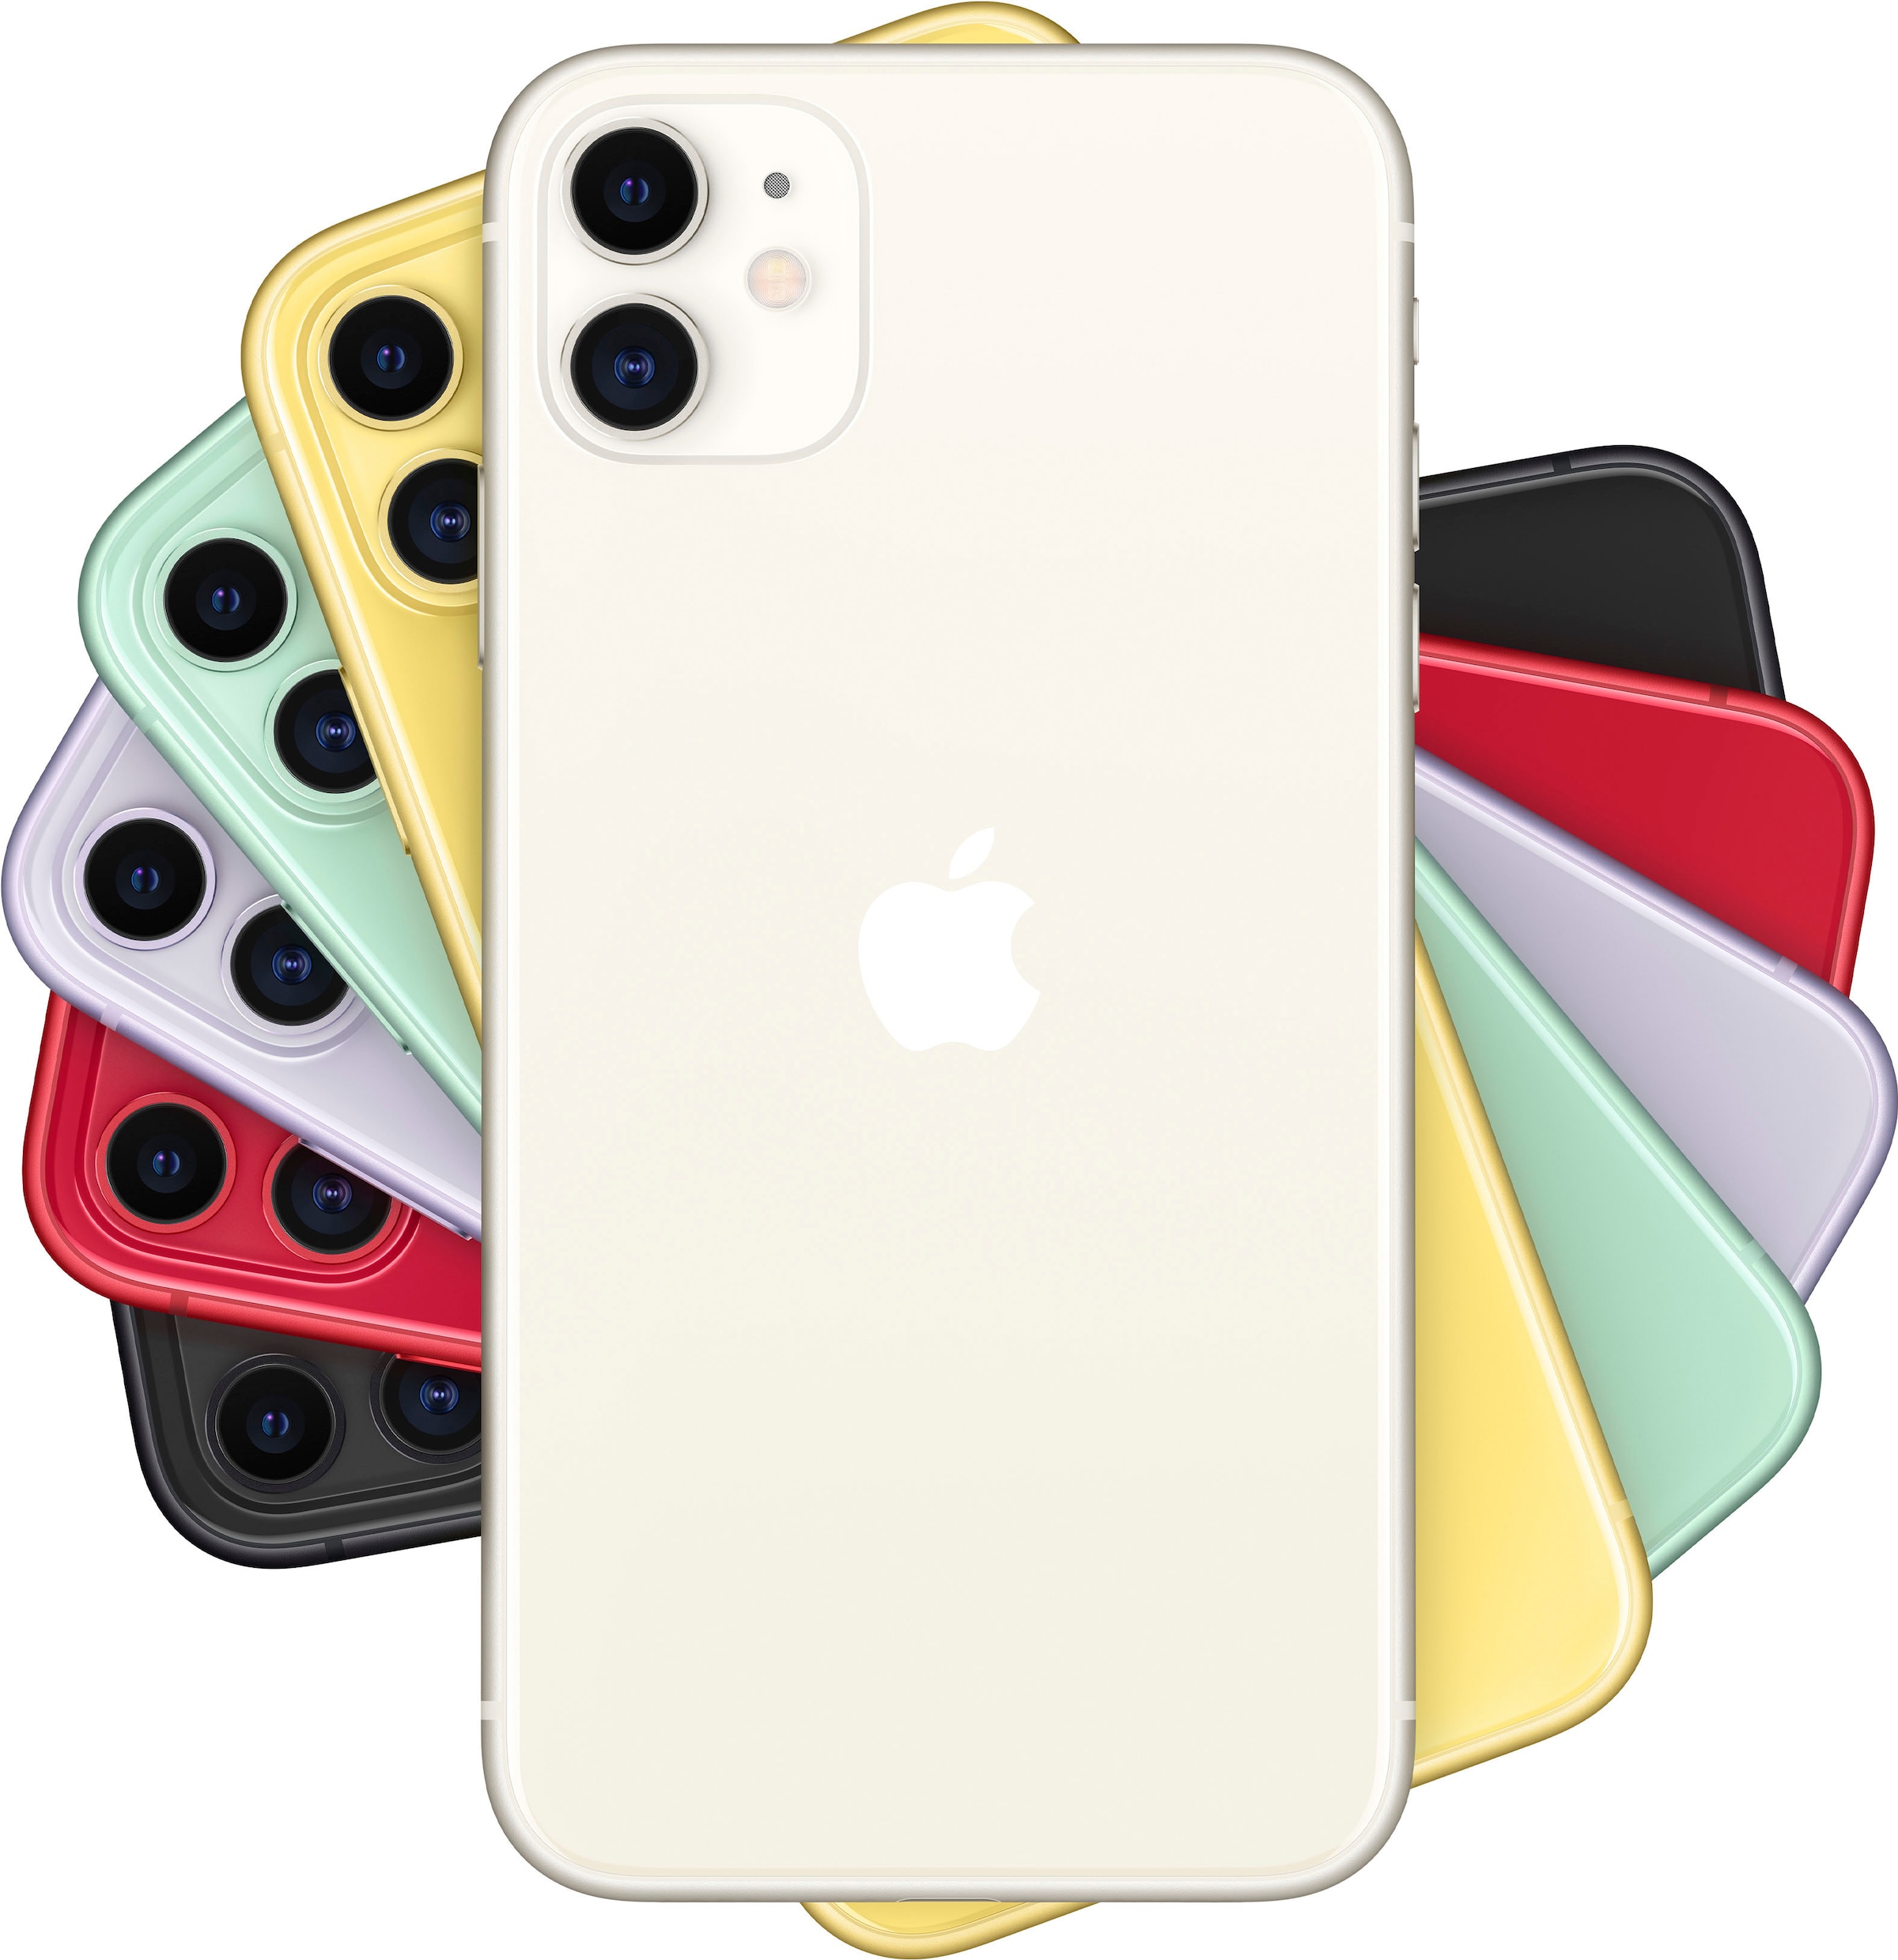 Apple Smartphone »iPhone 11«, white, 15,5 cm/6,1 Zoll, 64 GB Speicherplatz, 12 MP Kamera, ohne Strom-Adapter und Kopfhörer